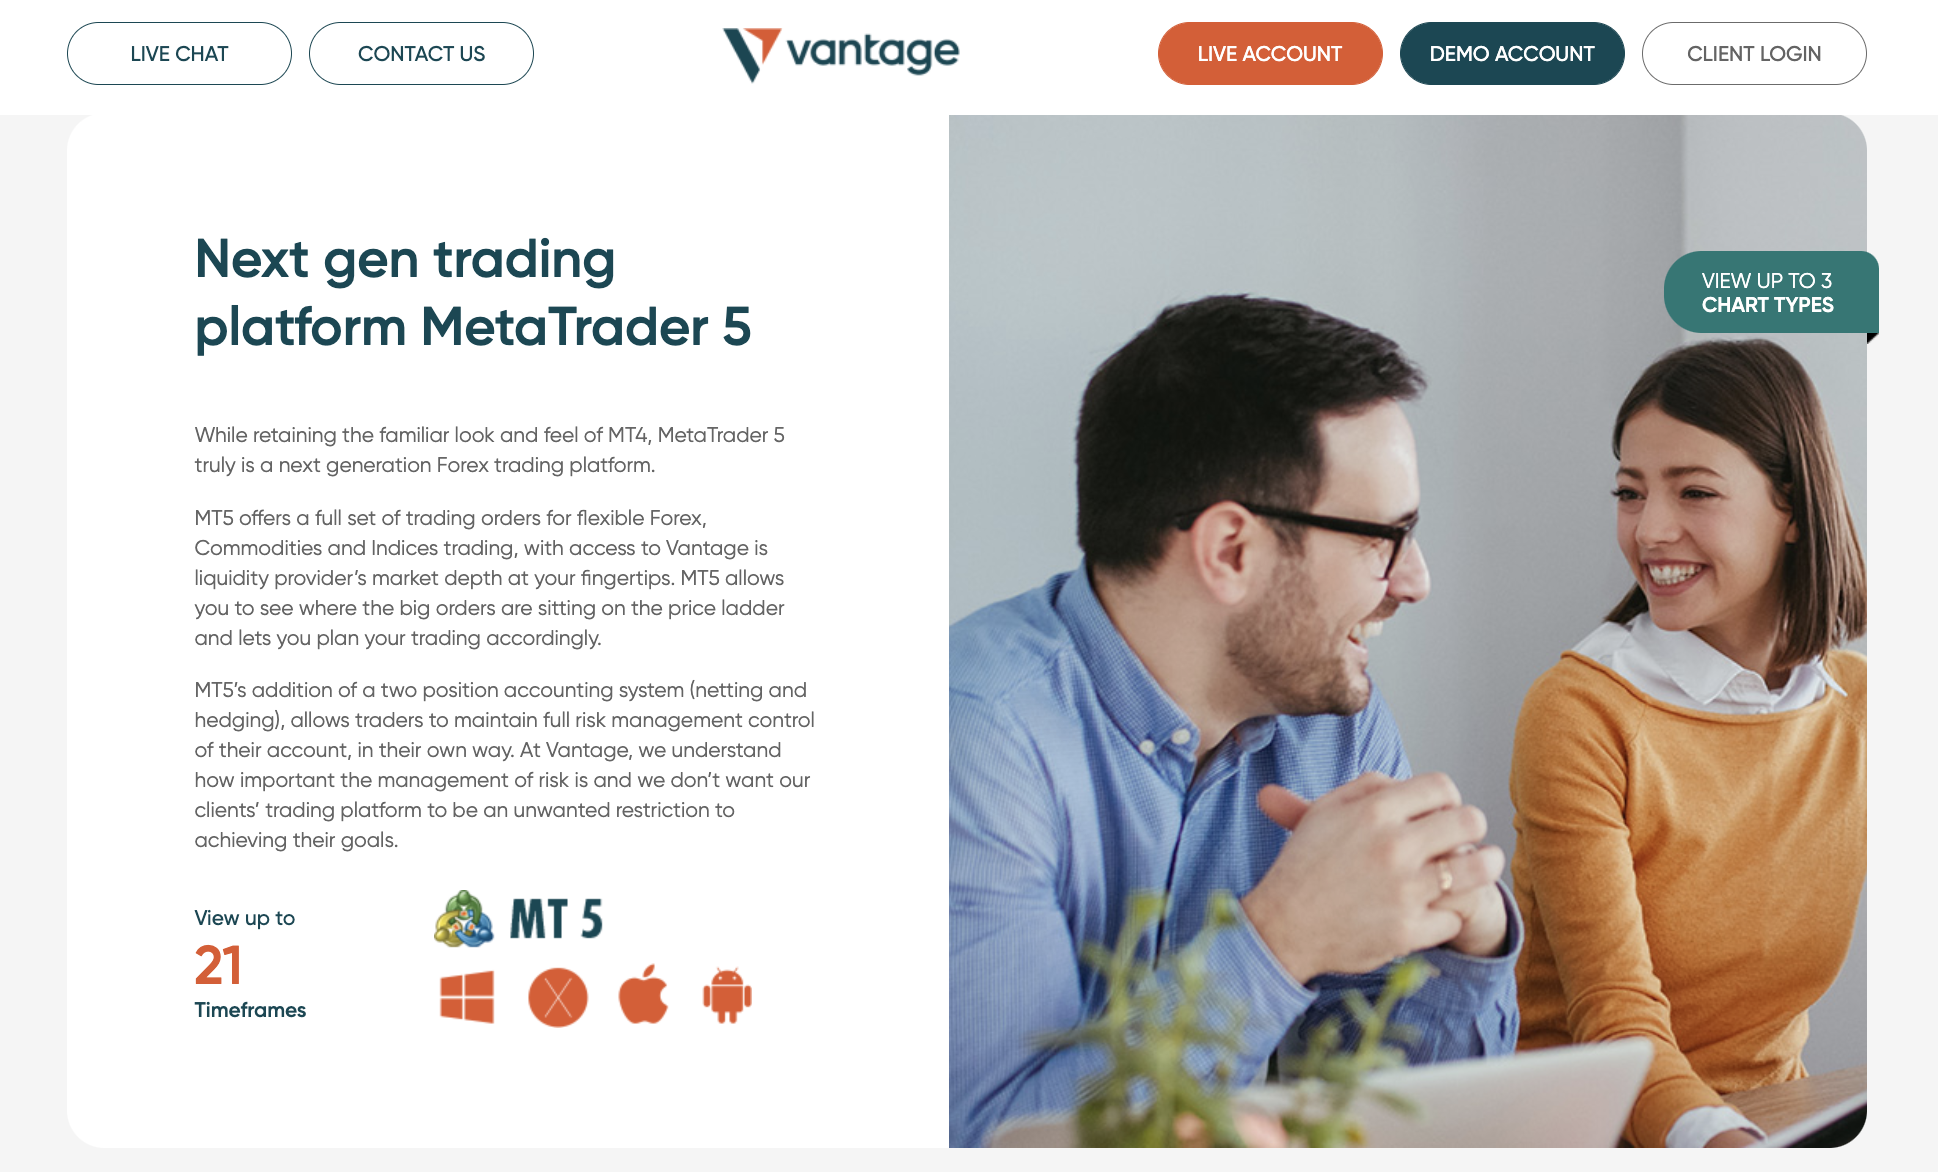 Vantage Markets supporting MetaTrader 5